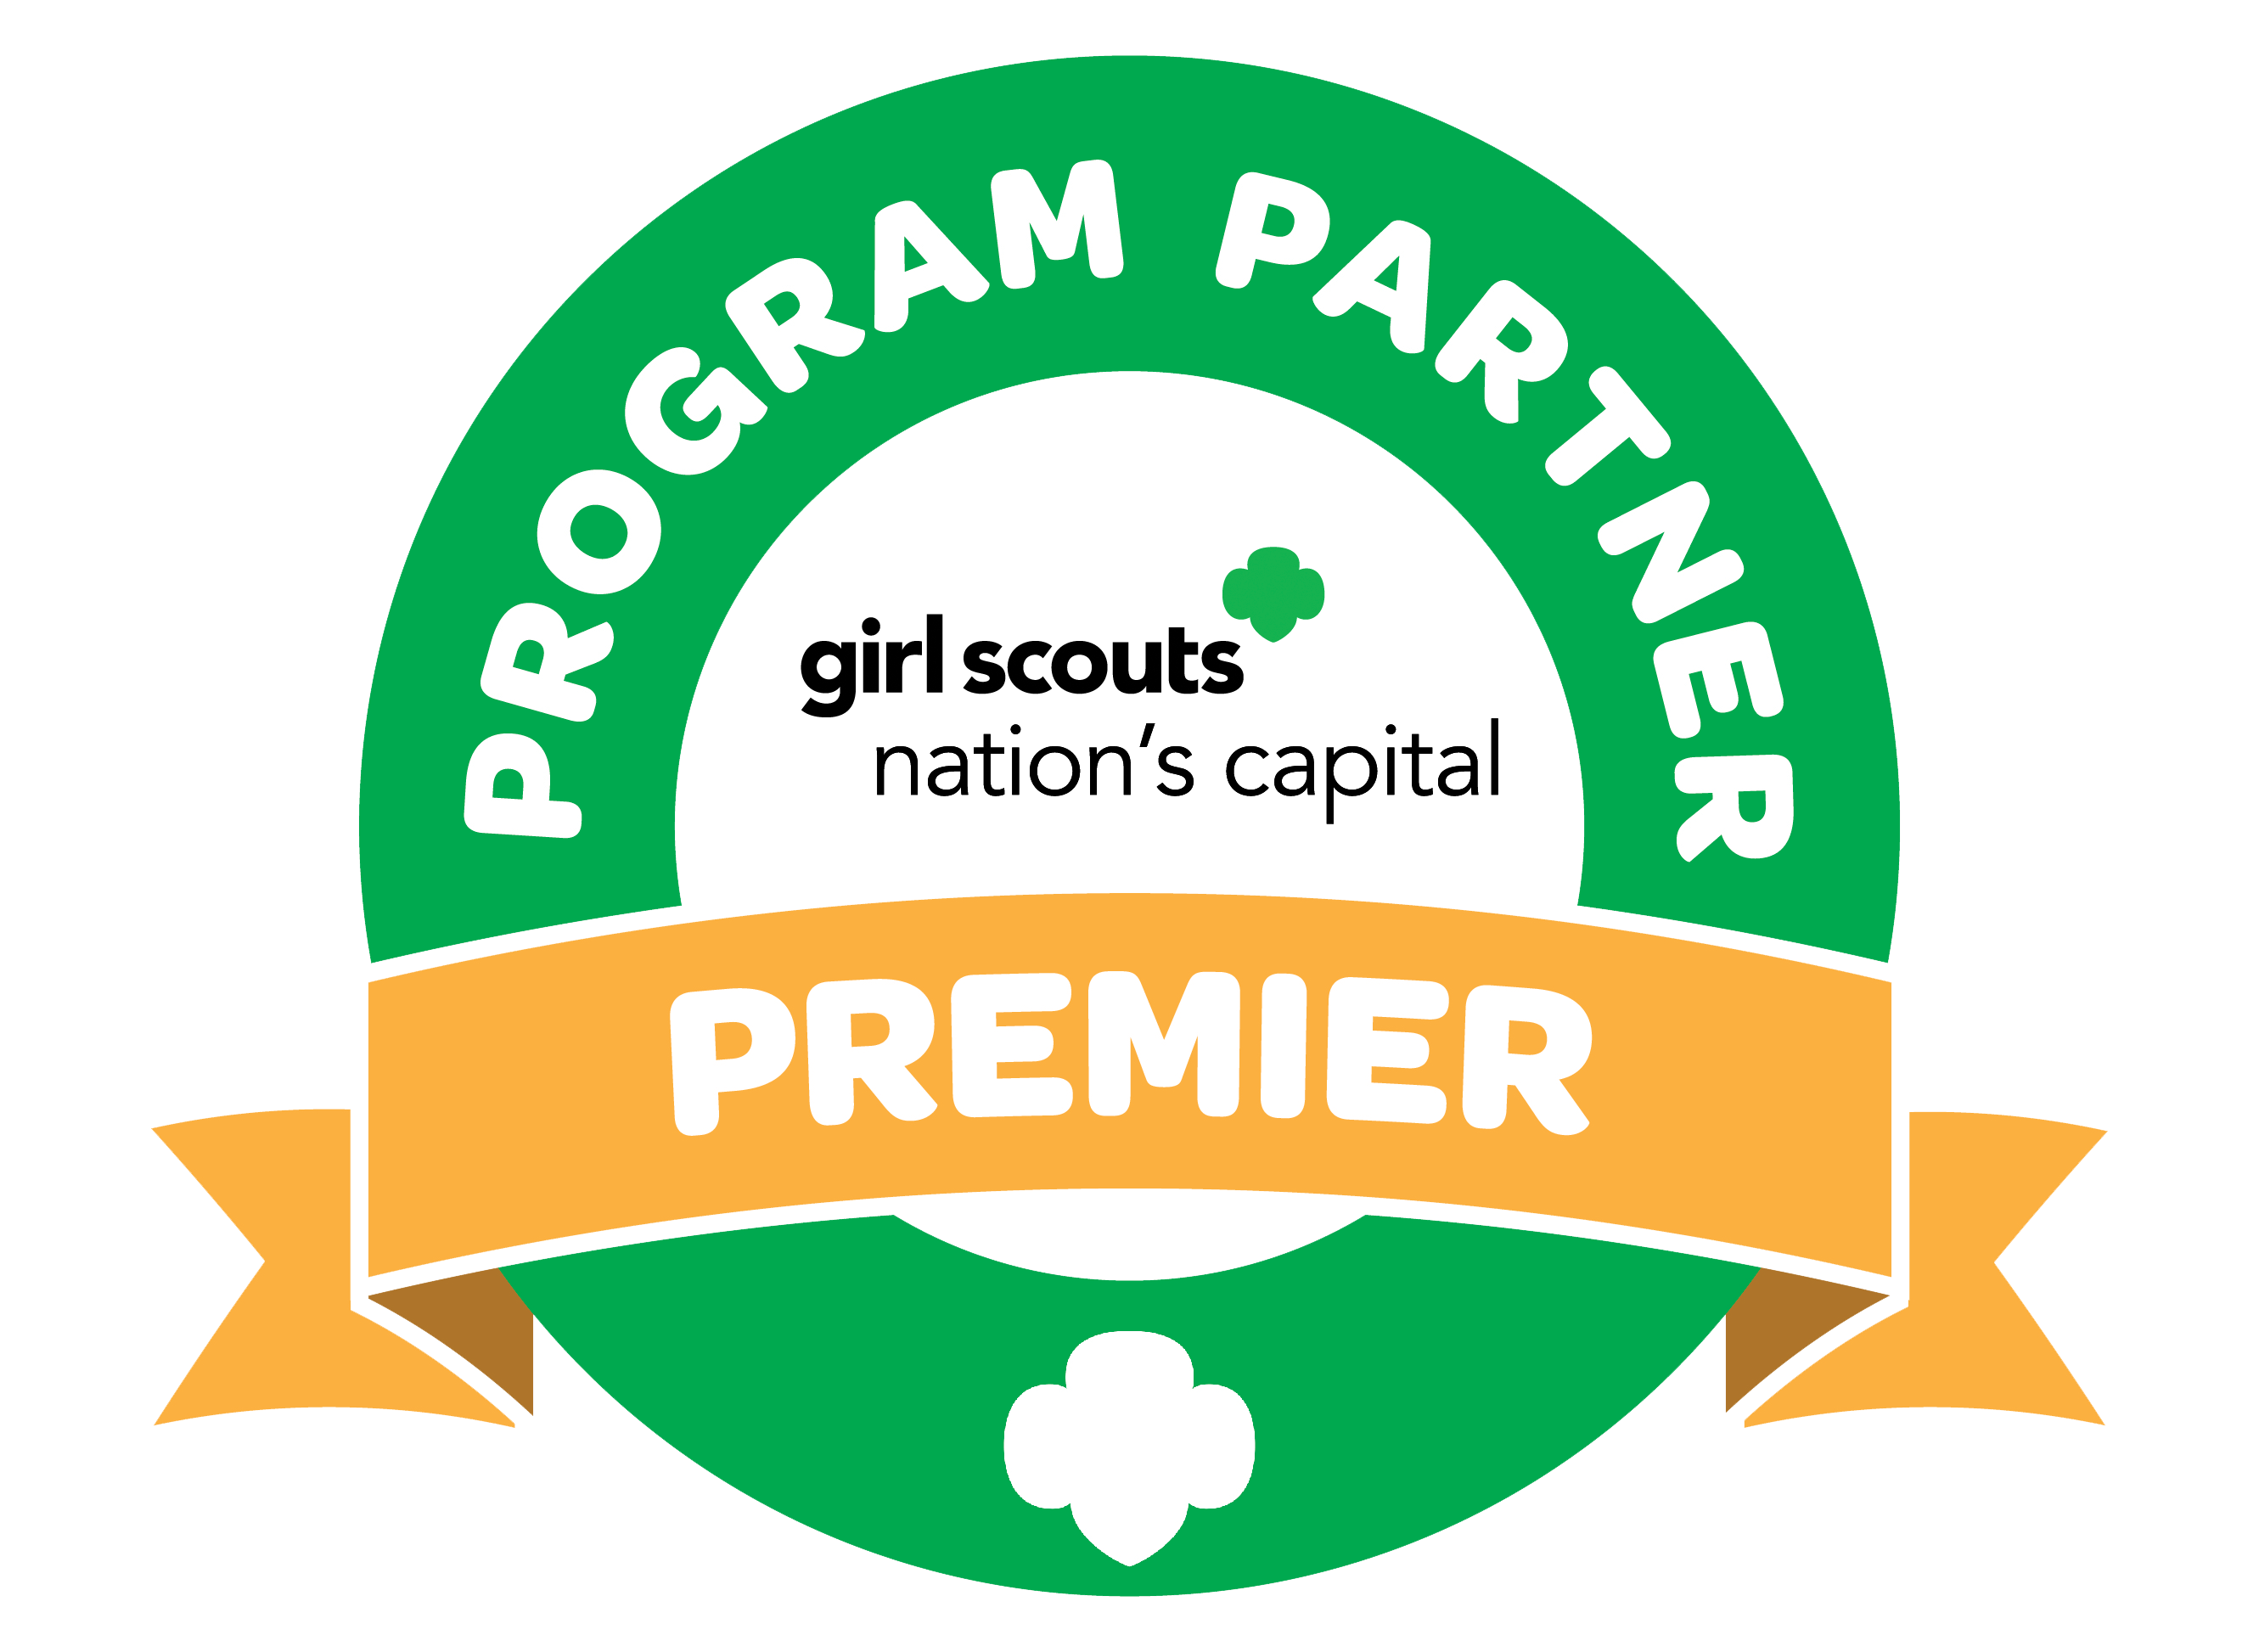 Girl Scout program partner logo